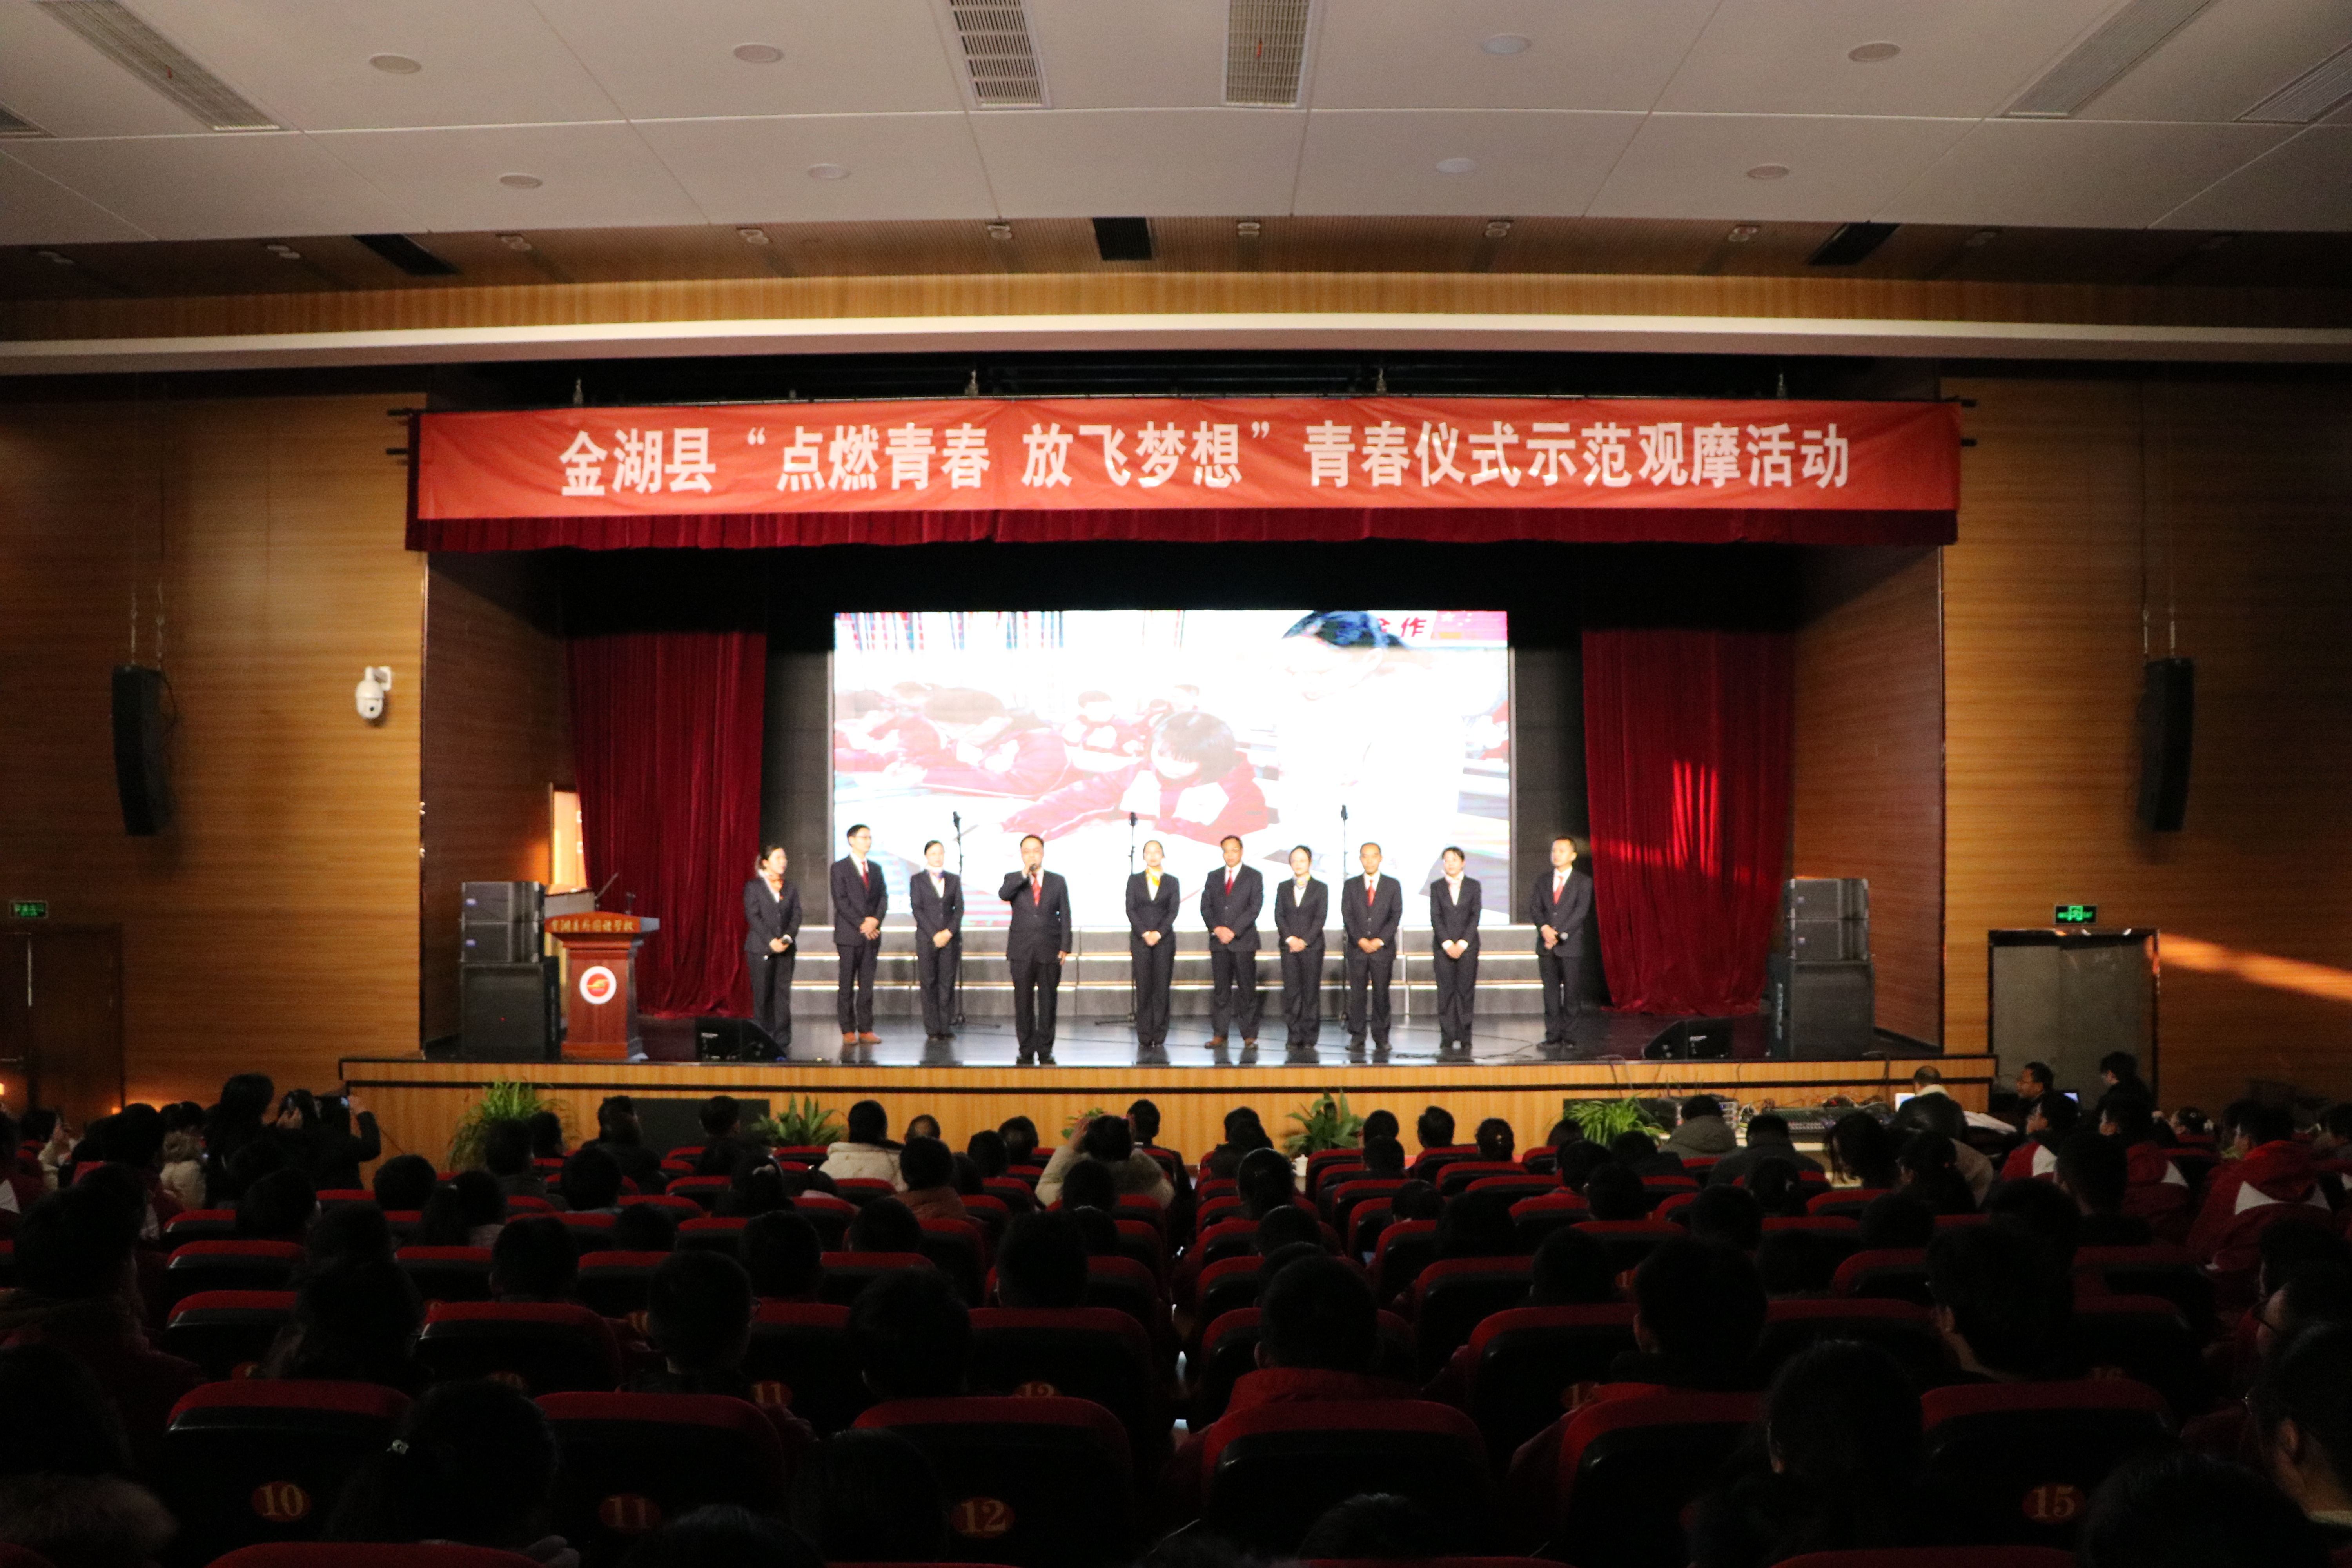 金湖县外国语中学举办“我们的青春”仪式观摩活动